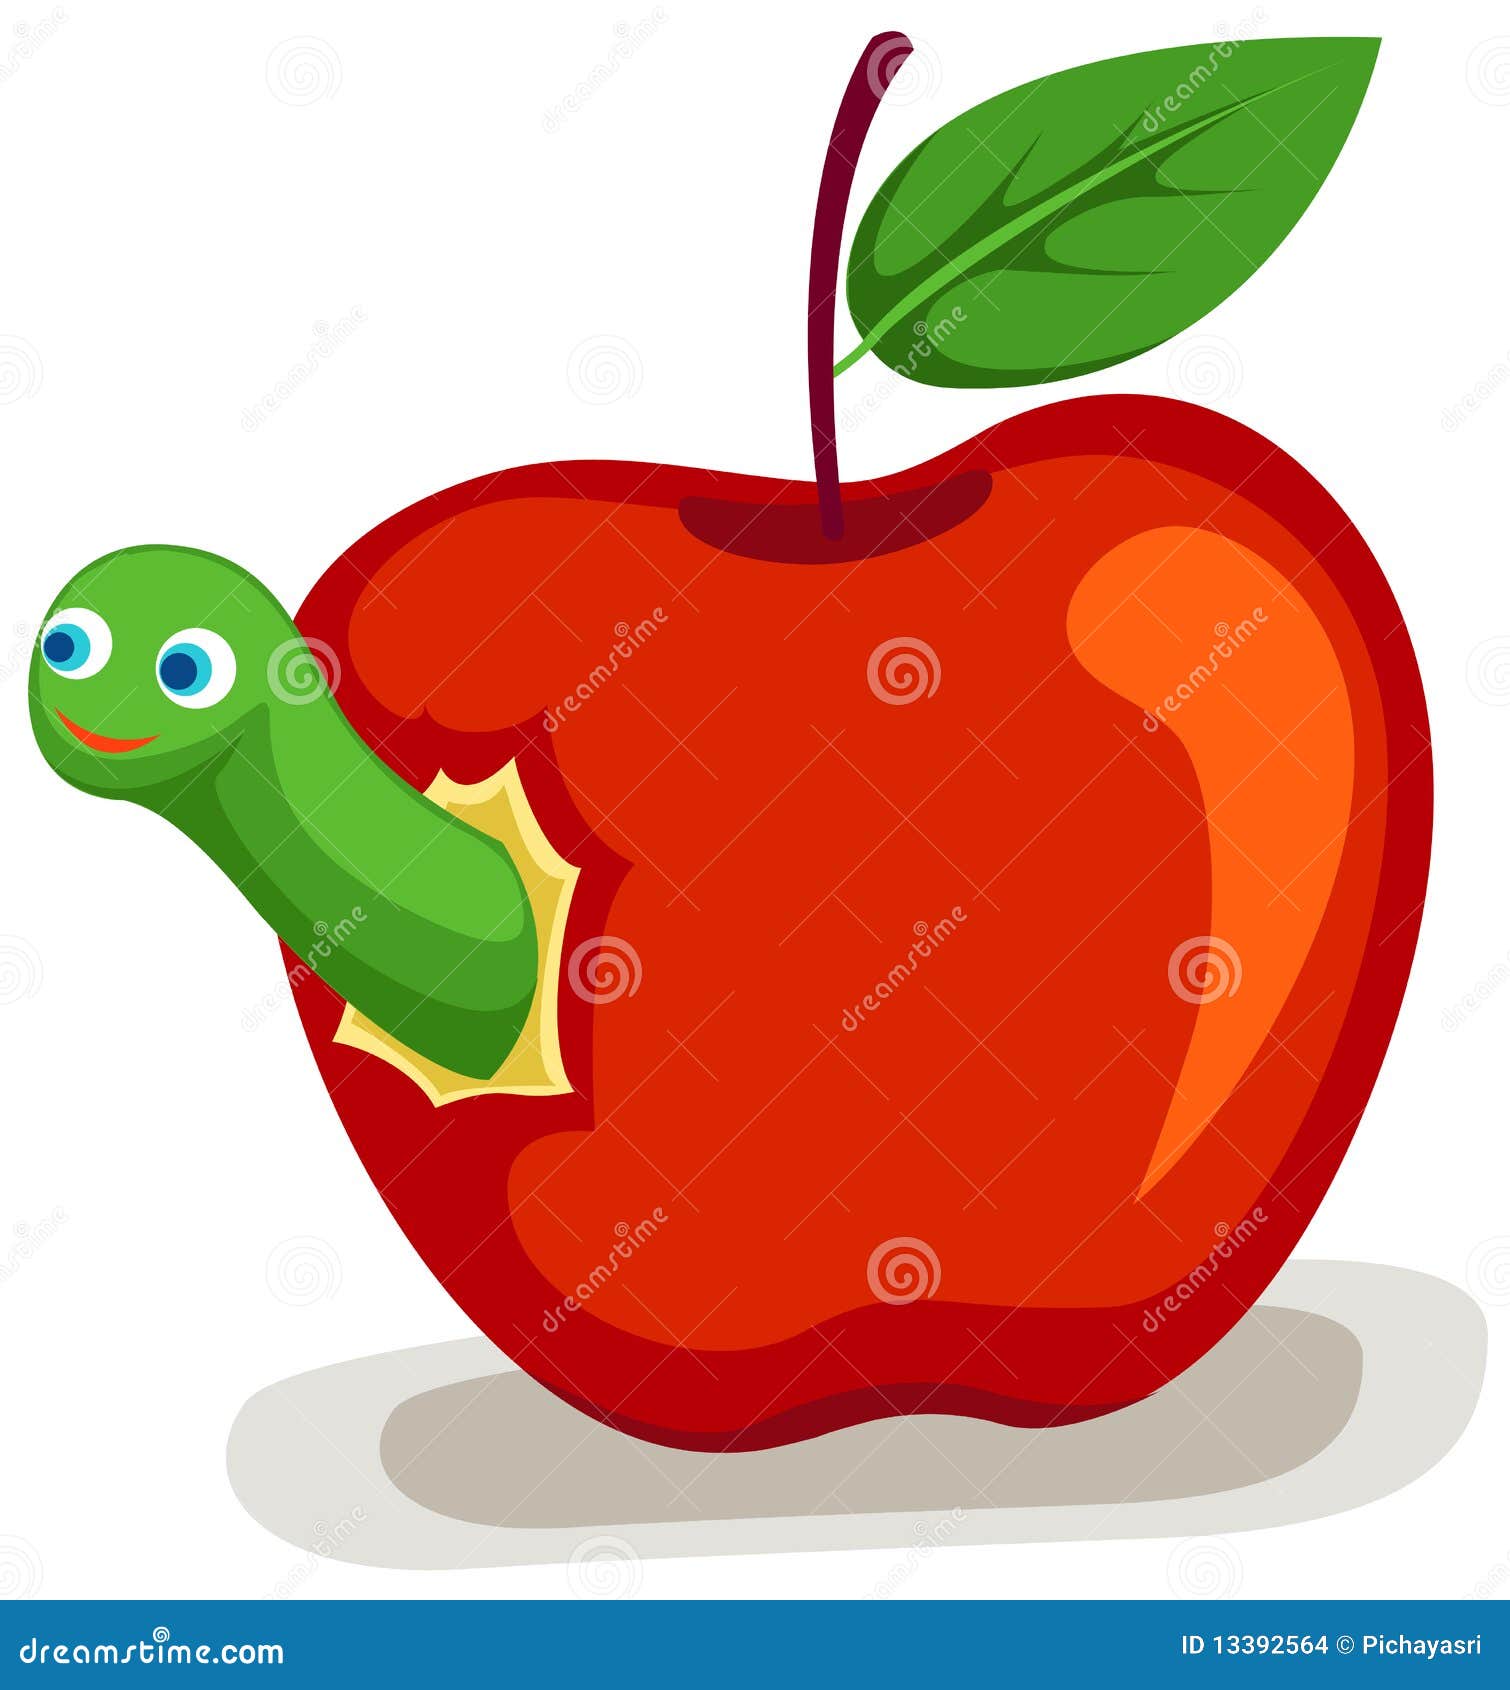 Яблочко с листочком и червячком